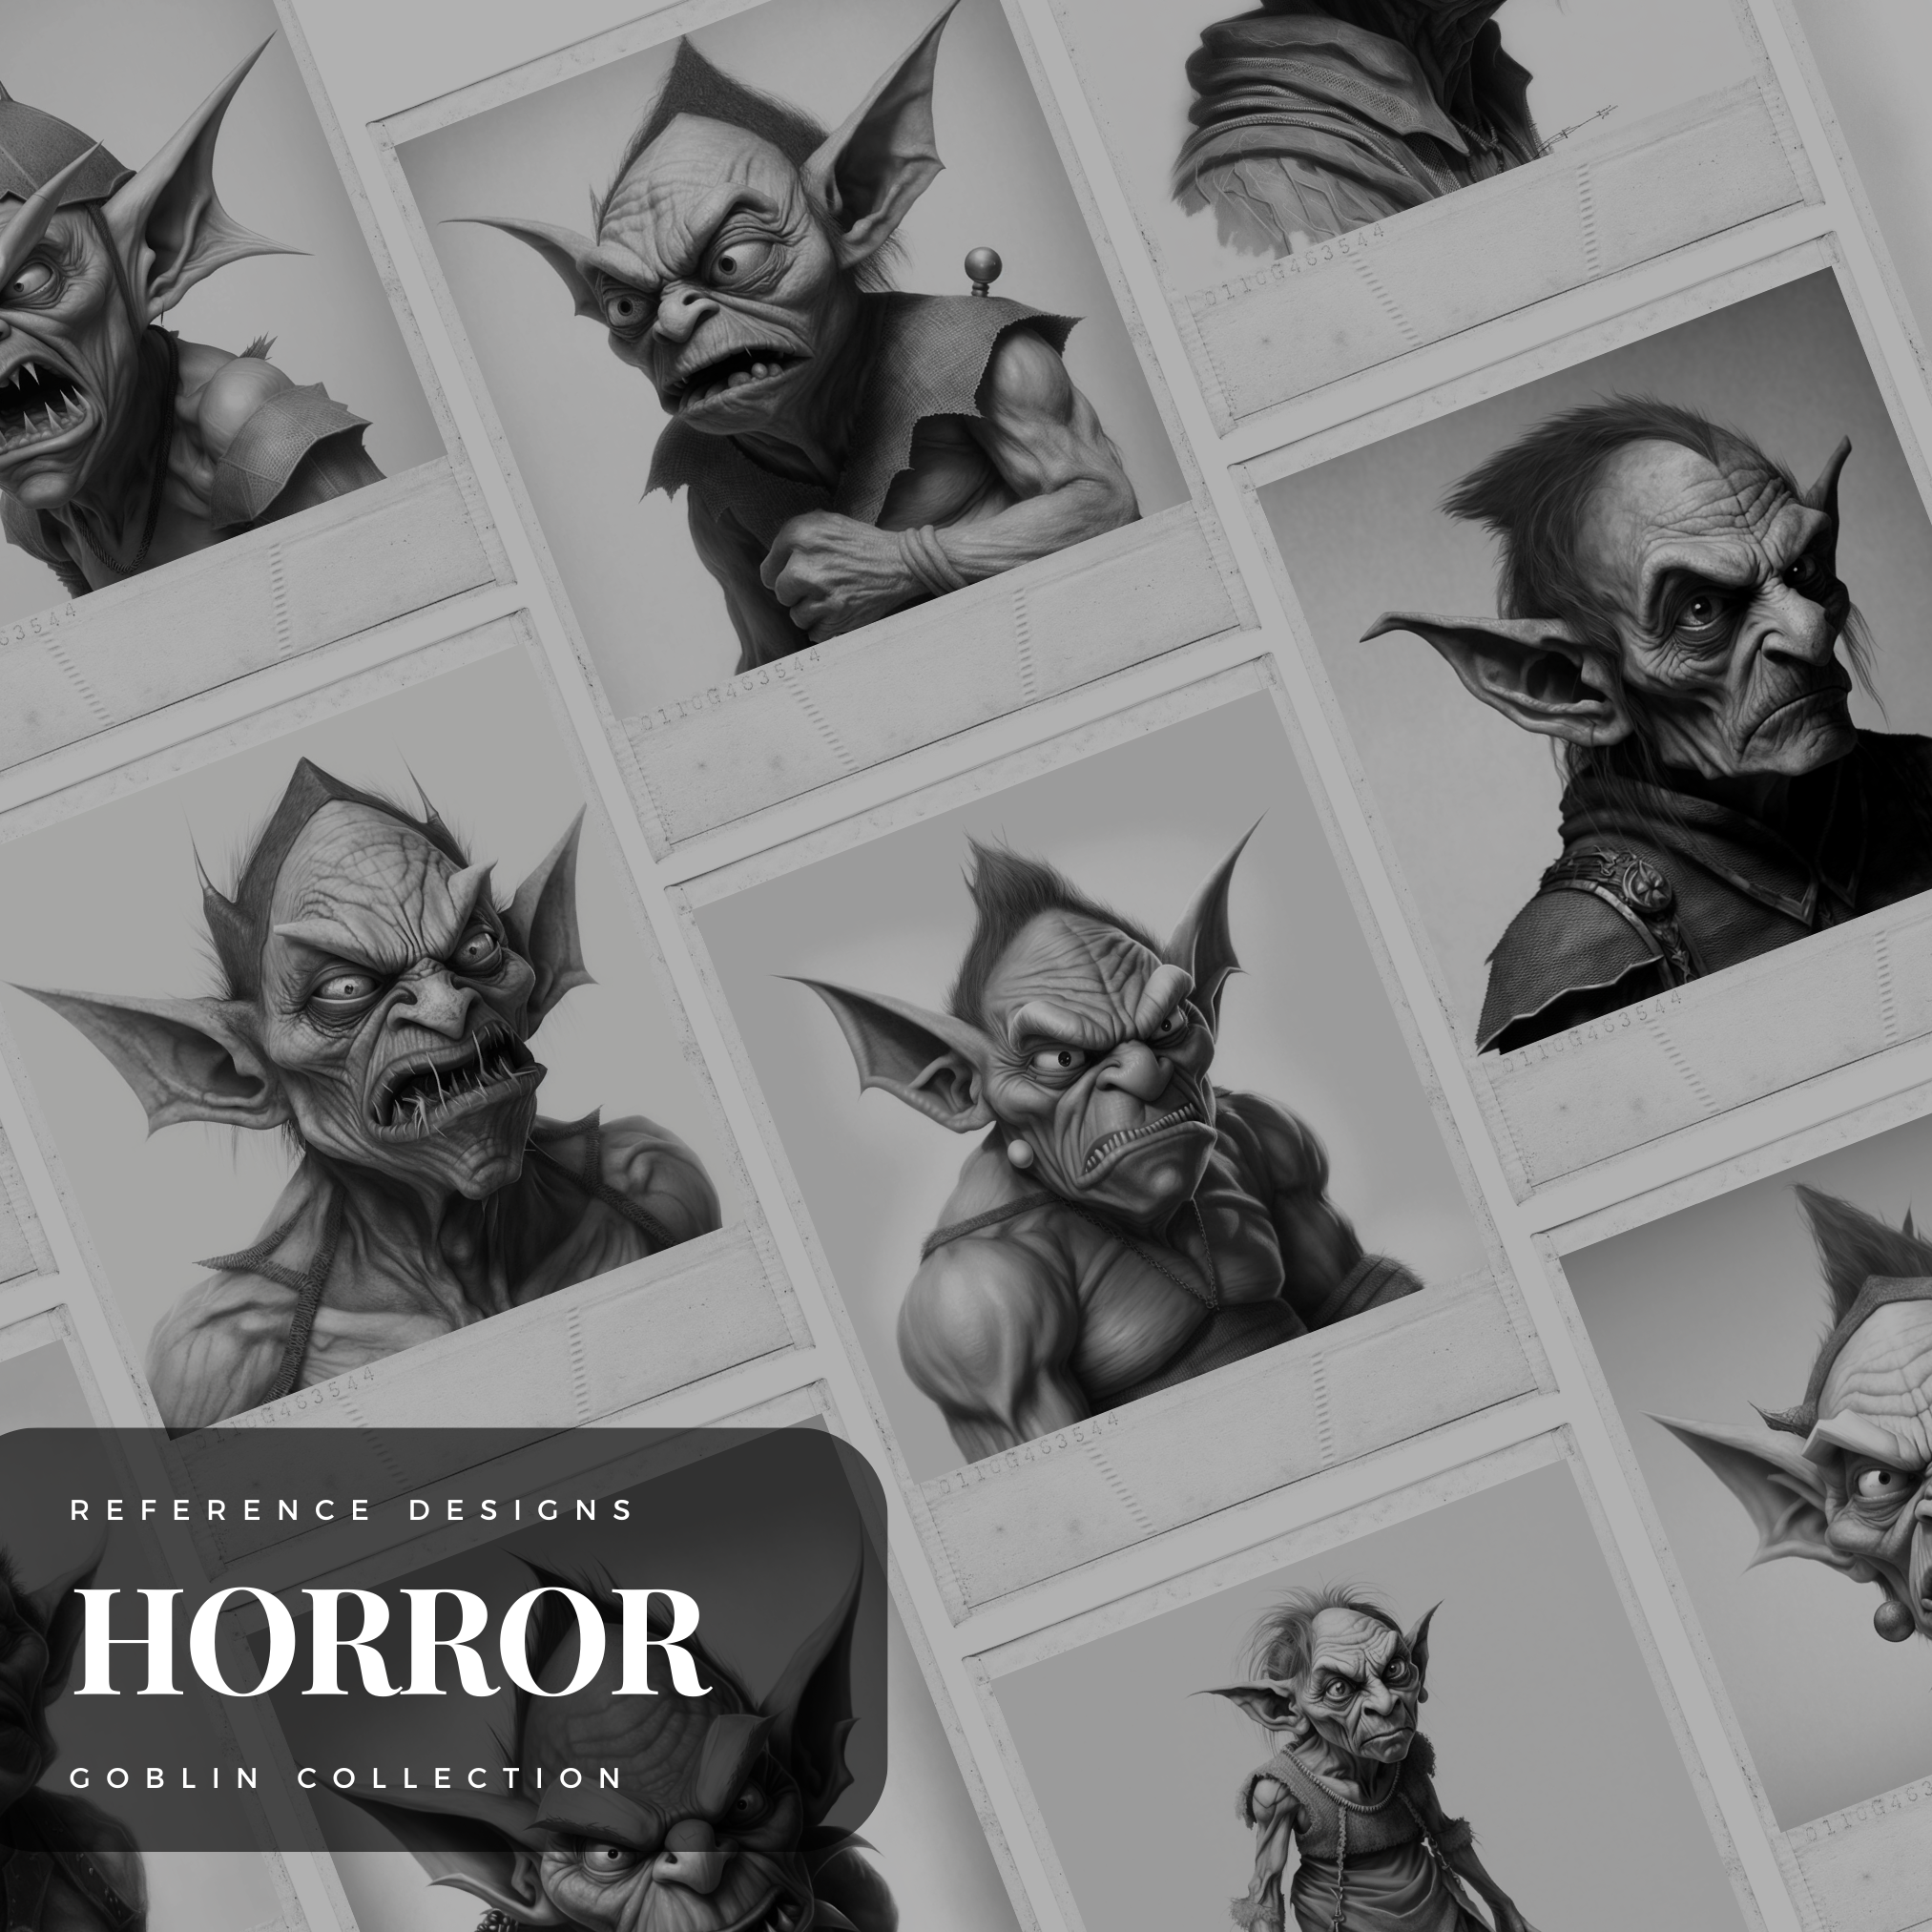 Goblins Digital Horror Design Collection: 50 Procreate & Sketchbook Images